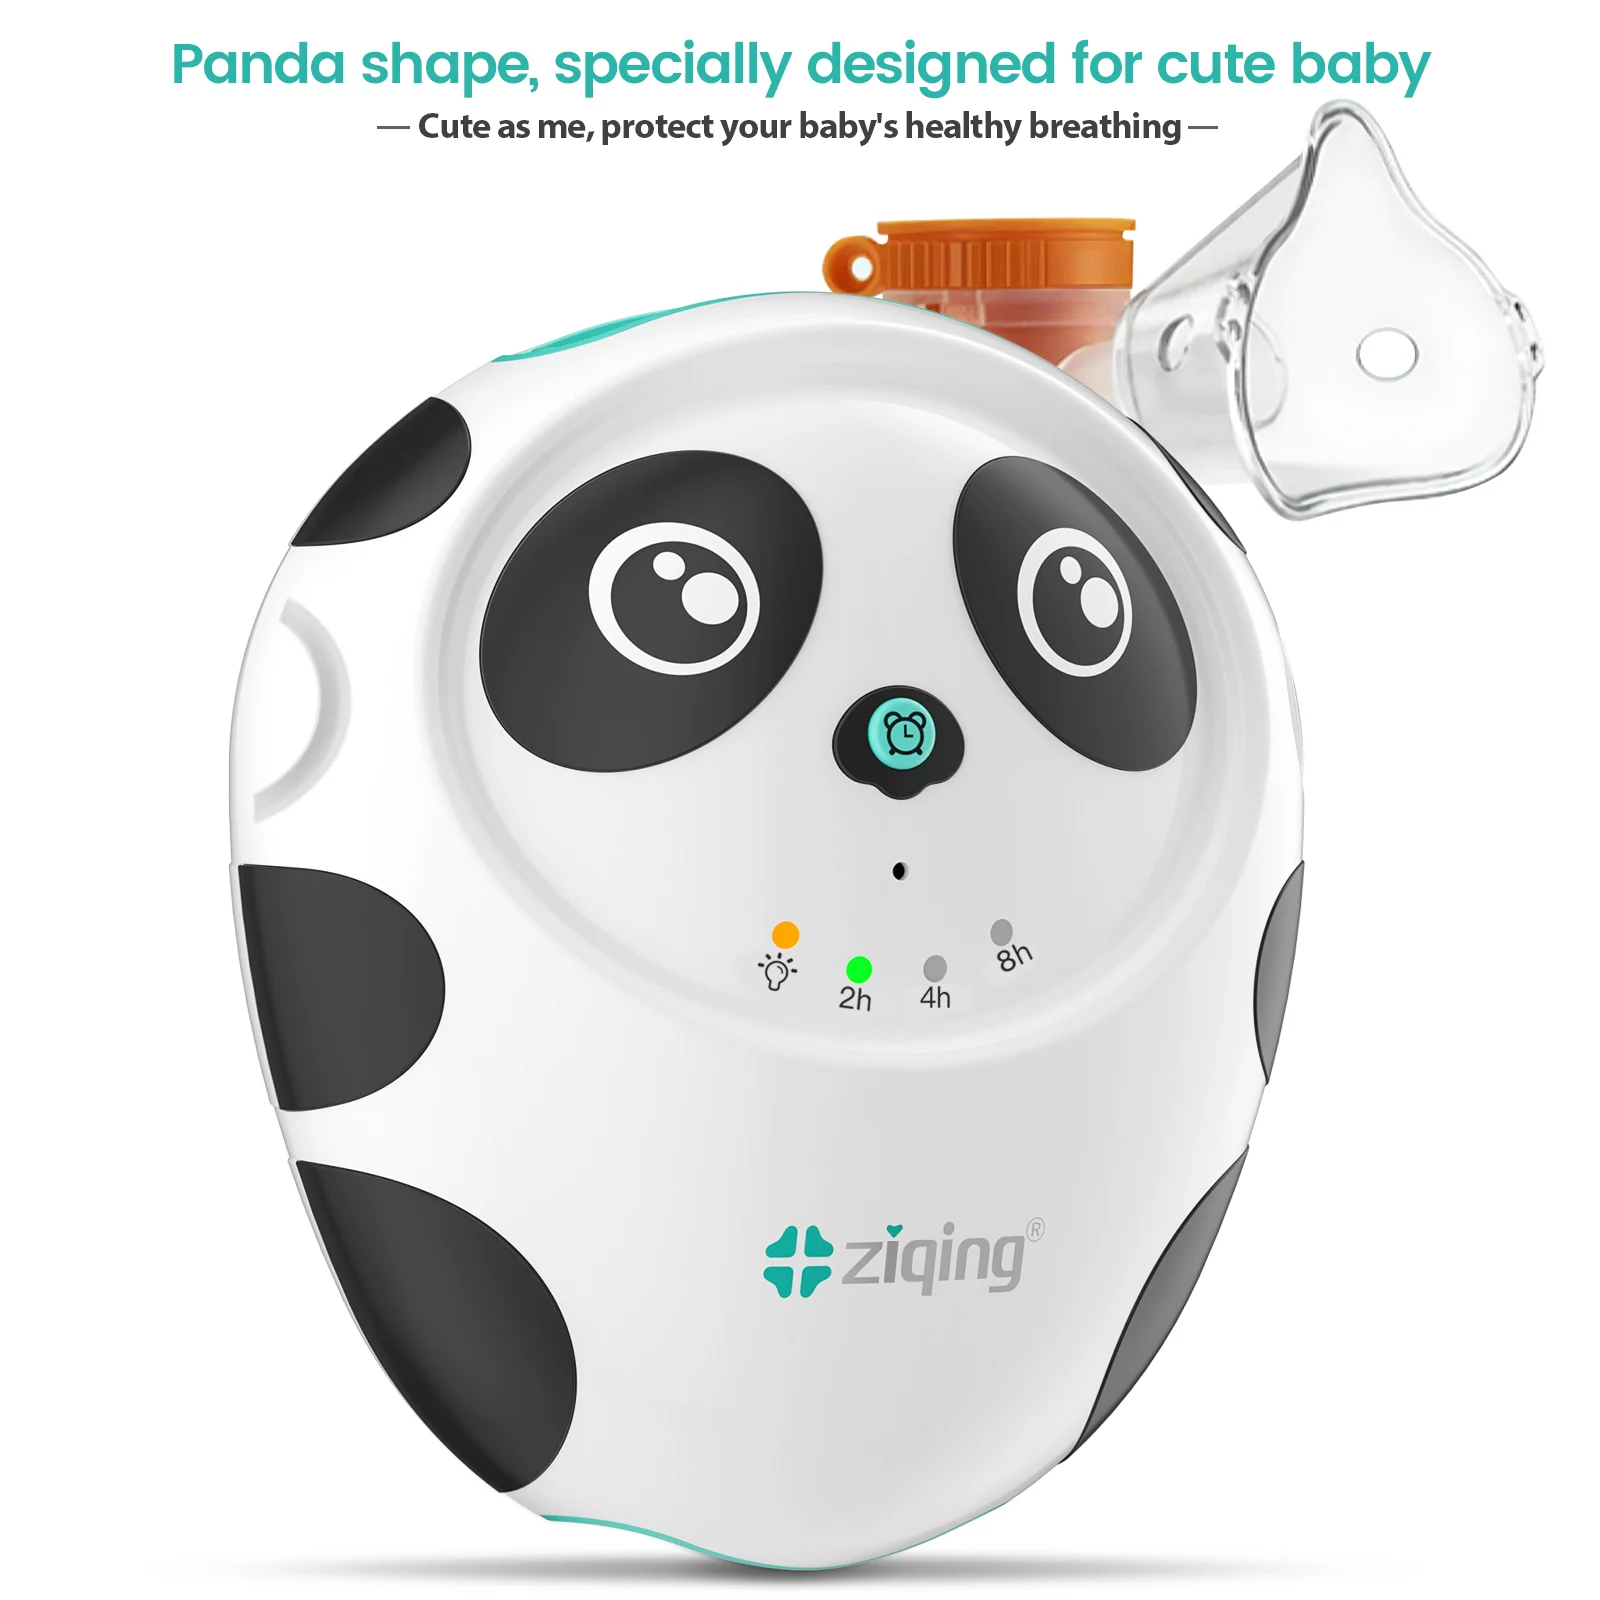 

Ziqing компрессор небулайзер машина панда форма небулайзер мониторинг здоровья Портативный тихий распылитель увлажнитель для взрослых детей